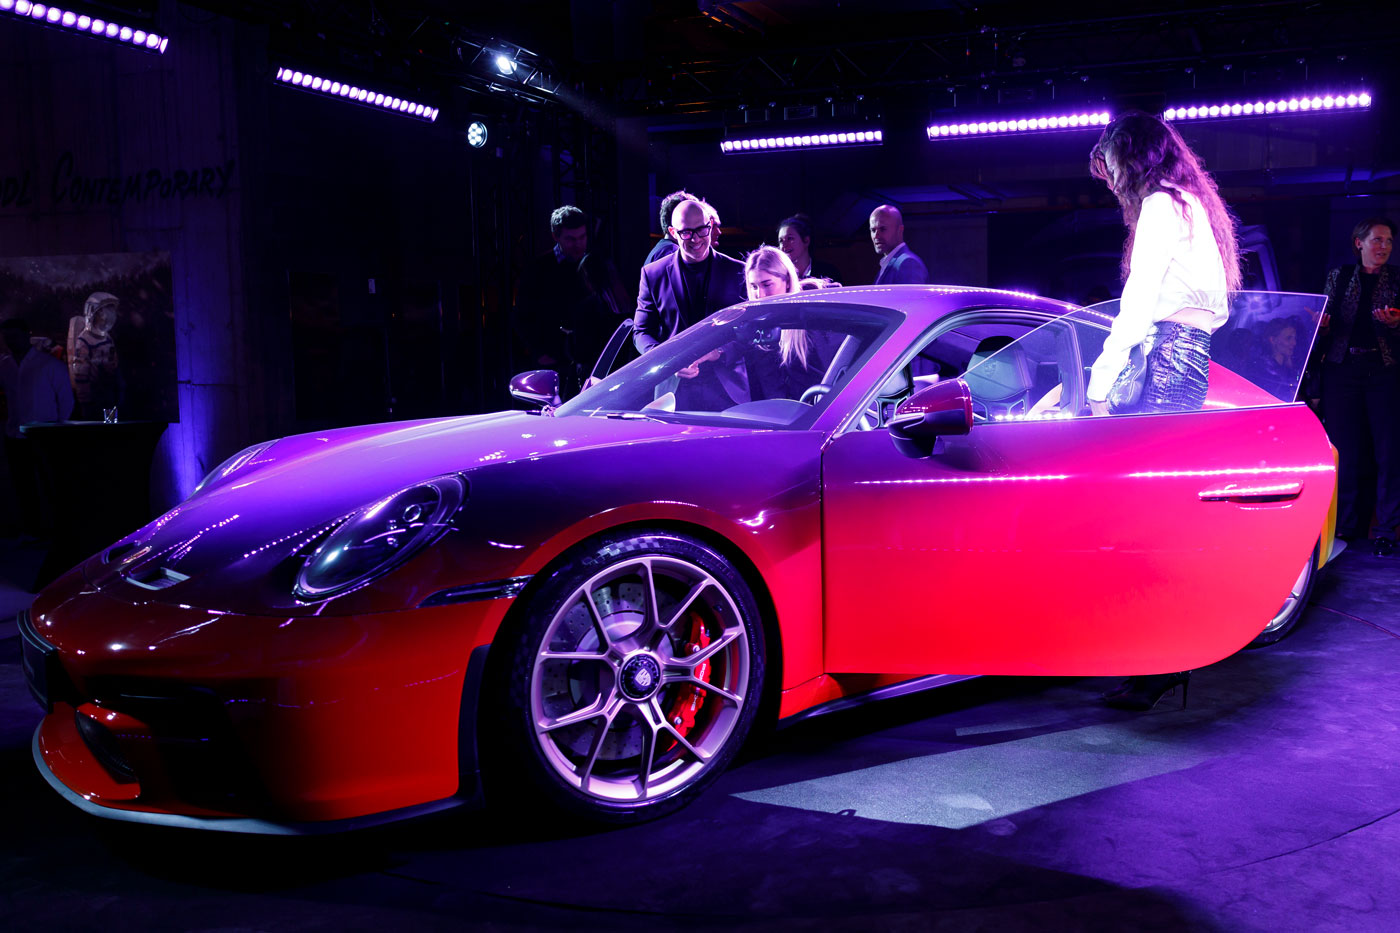 Když česká ruka ozdobí německou dokonalost. Porsche 911 GT3 Touring získalo na umělecké osobitosti